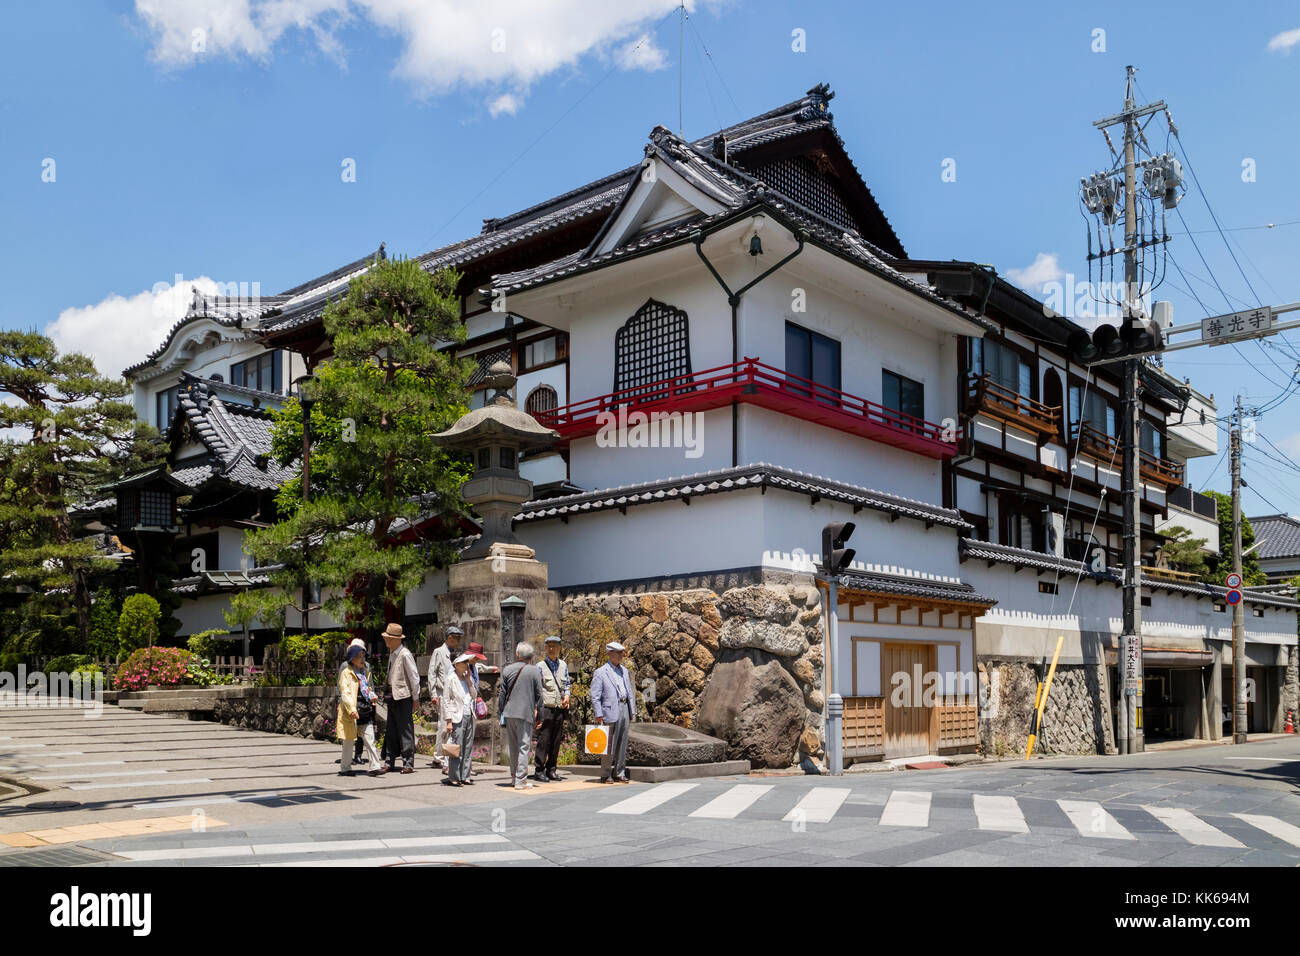 Nagano, Japón - junio 5, 2017: esquina de la calle en Nagano con casas tradicionales y turistas japoneses Foto de stock